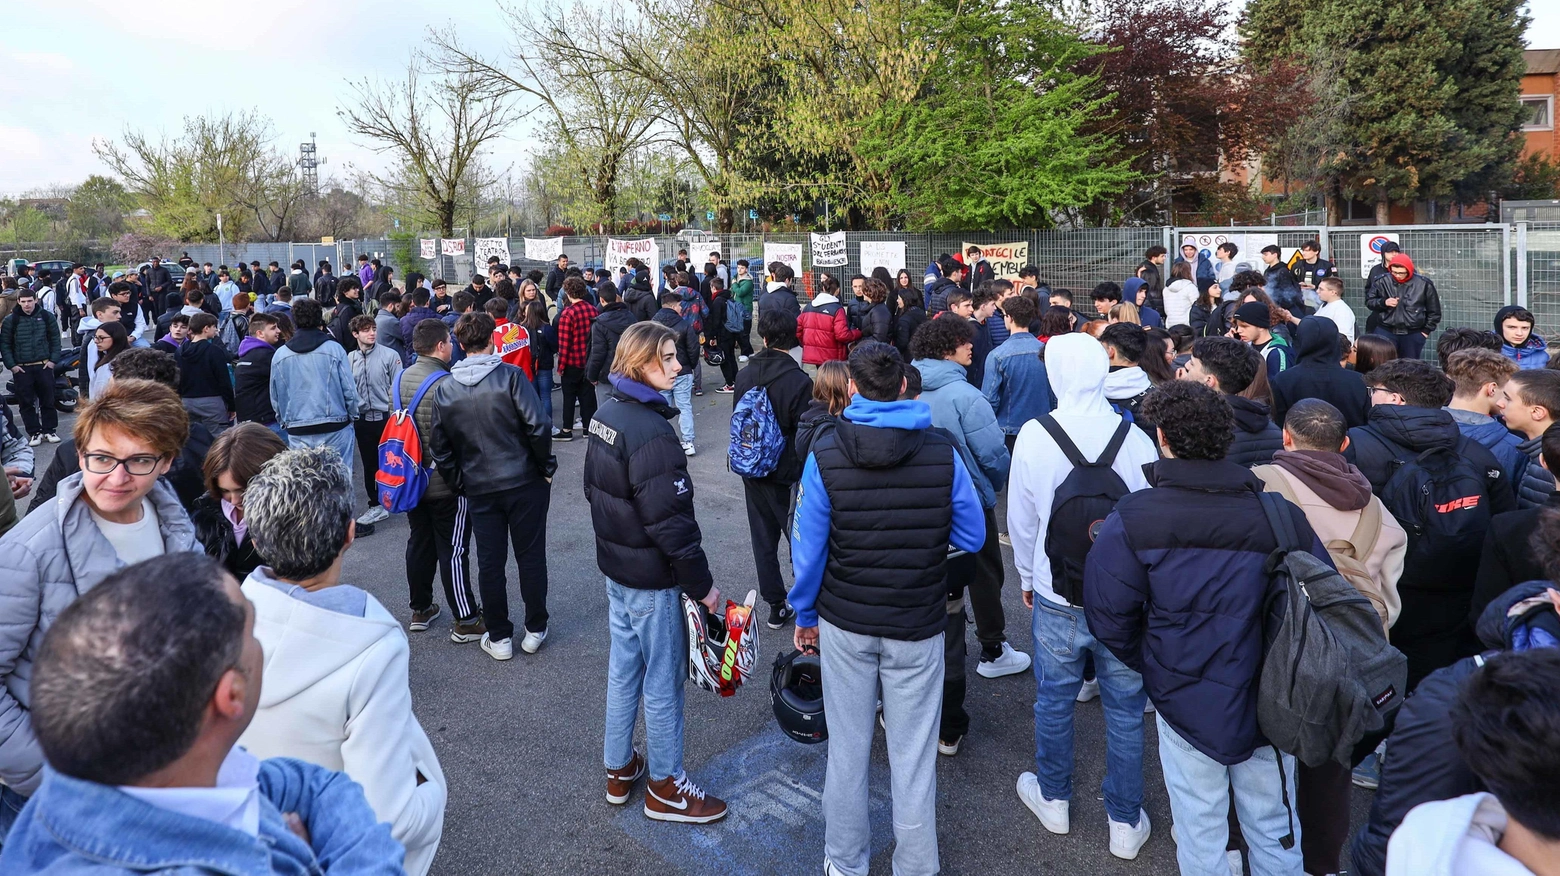 Studenti in rivolta contro la preside  "Ci nega i nostri diritti, se ne vada"